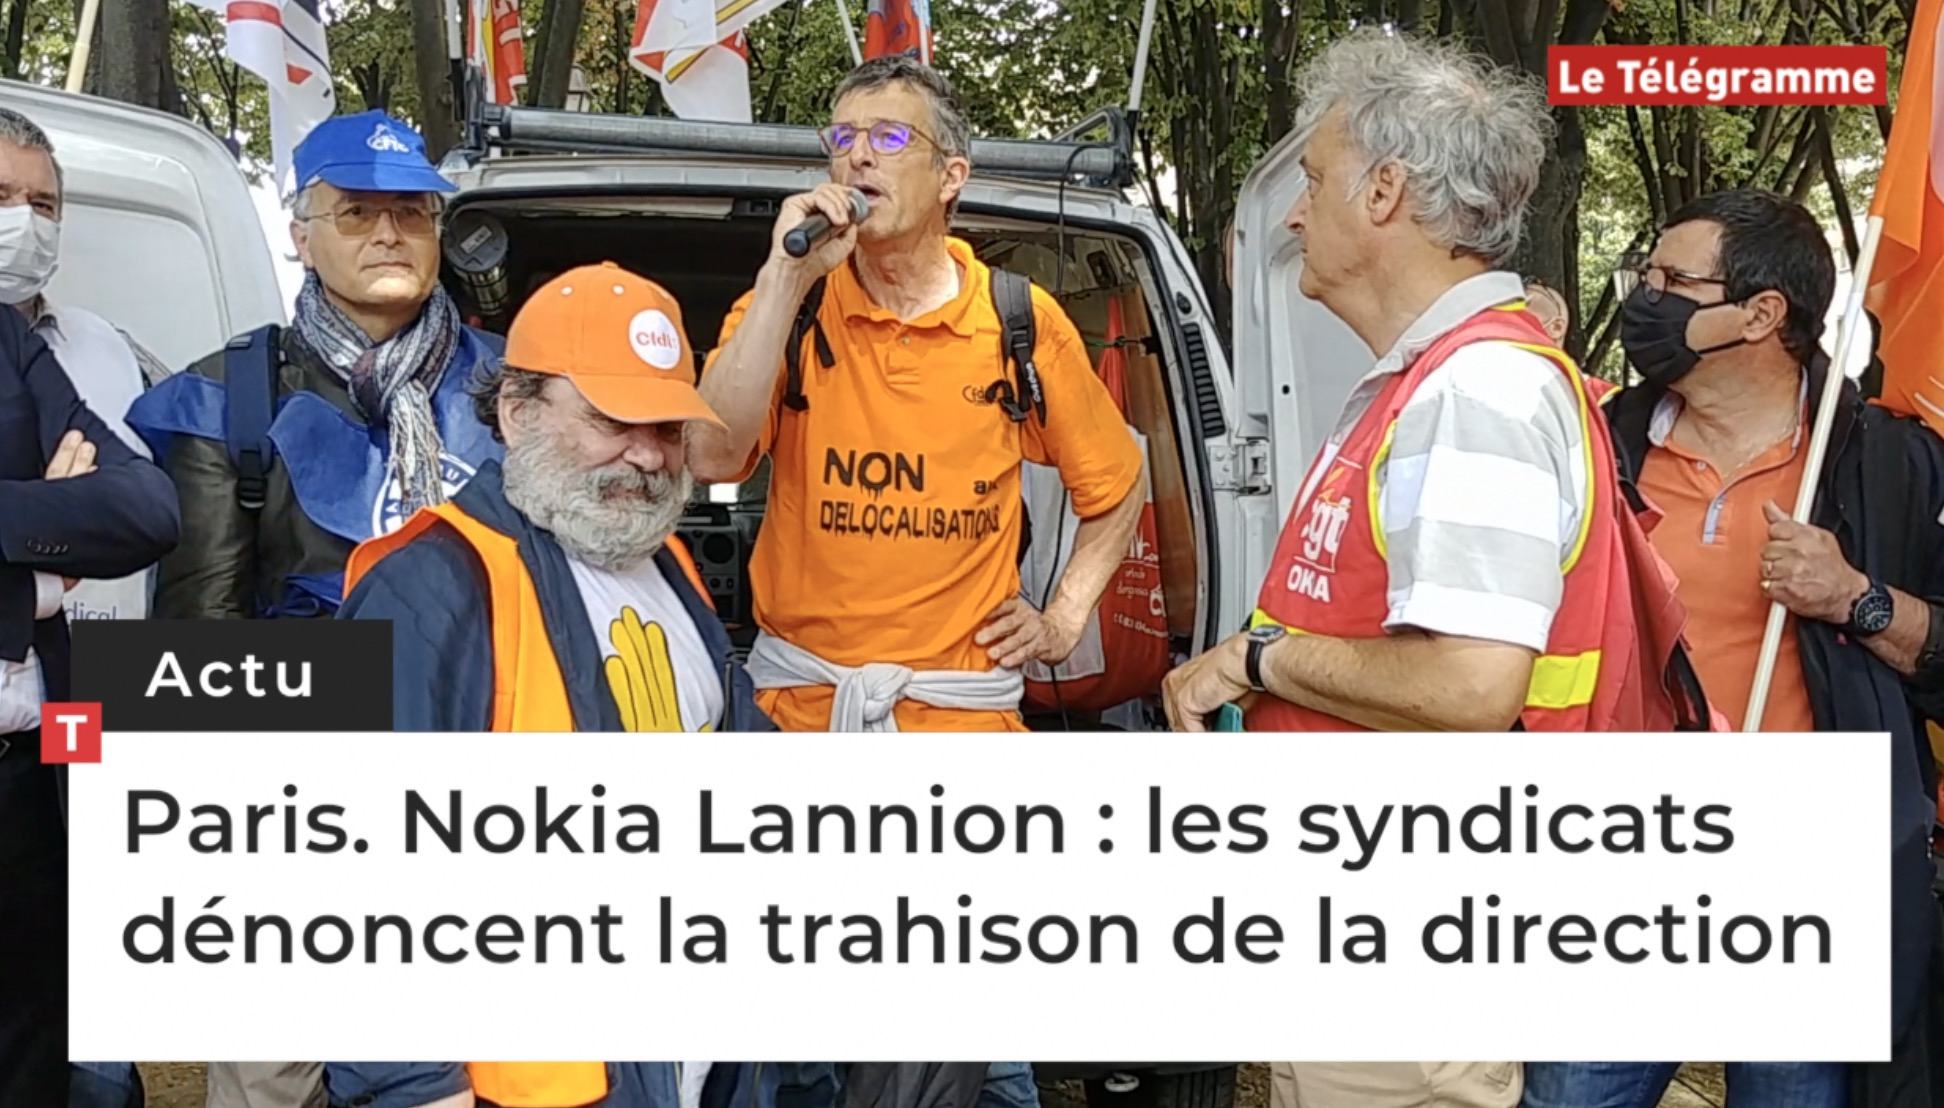 Paris. Nokia Lannion : les syndicats dénoncent la trahison de la direction (Le Télégramme)